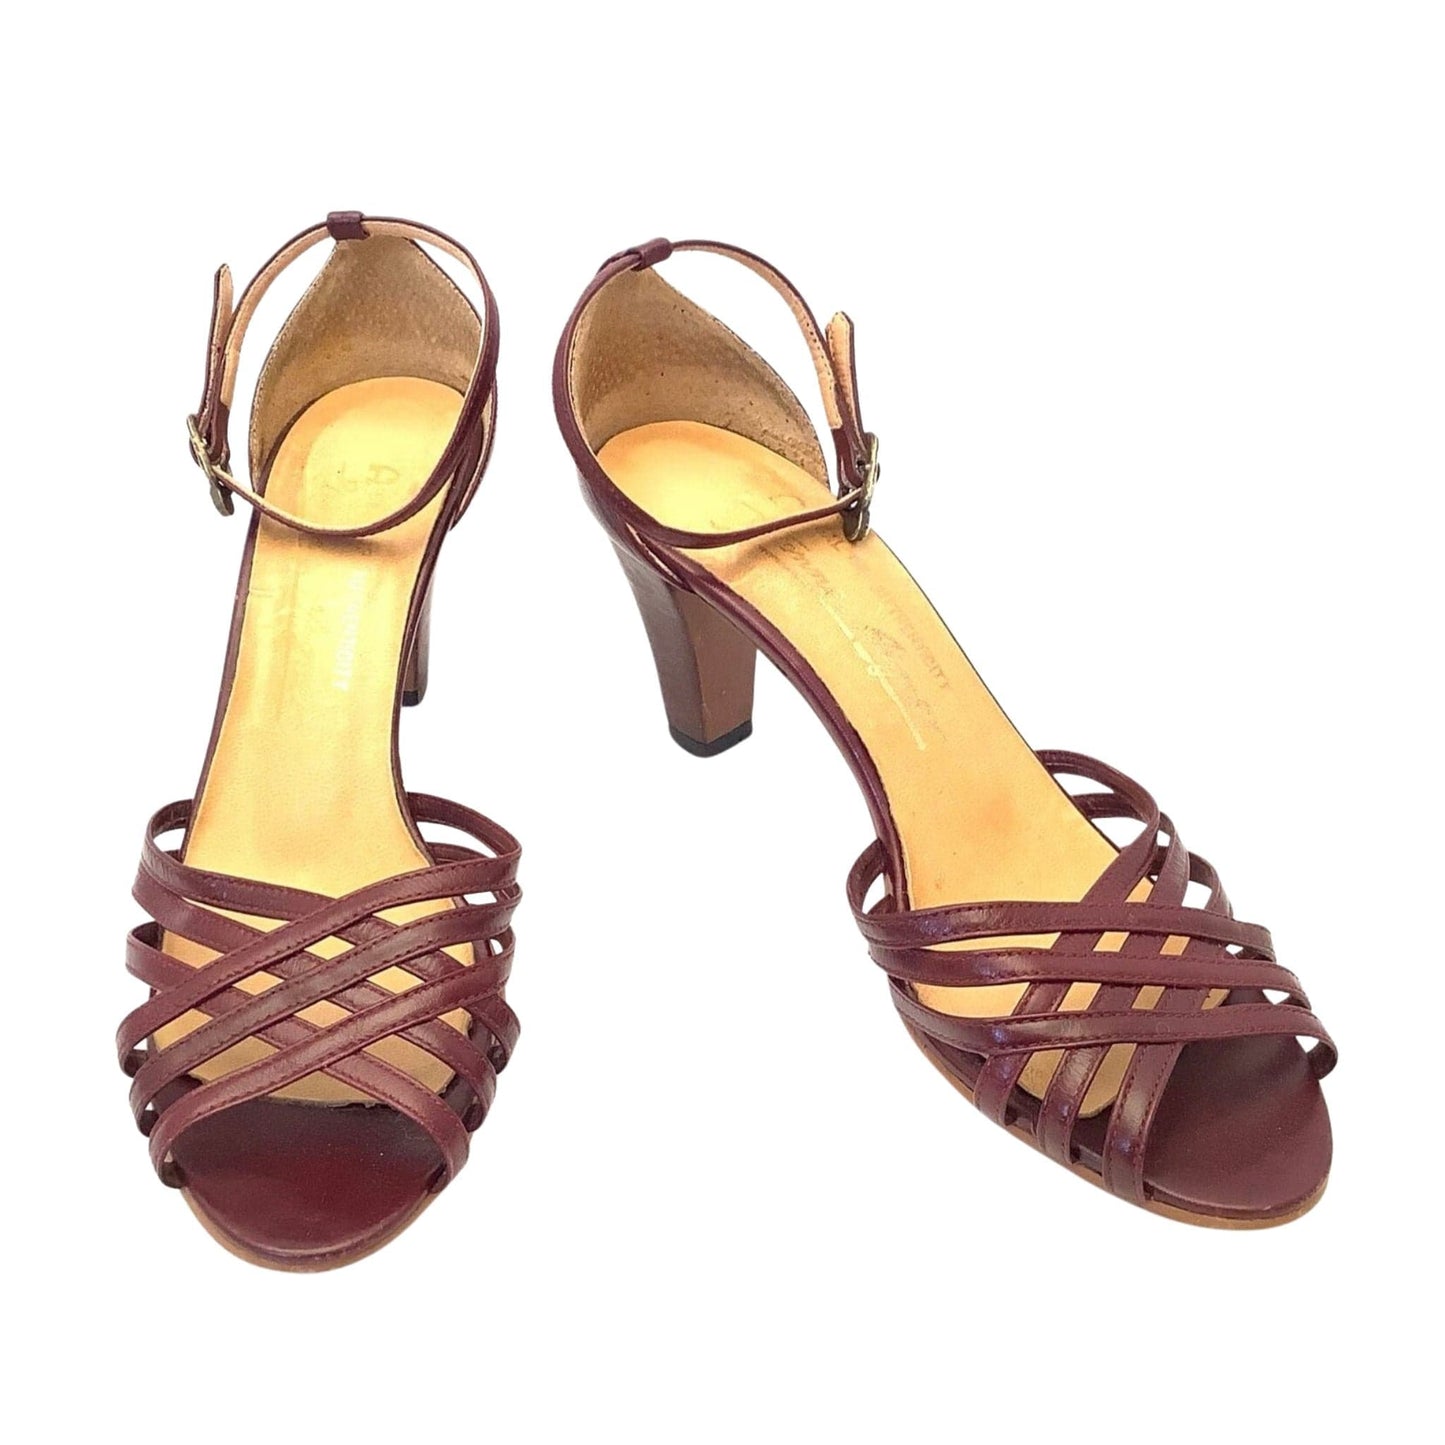 1980s Heeled Sandals 7 / Burgundy / Vintage 1980s